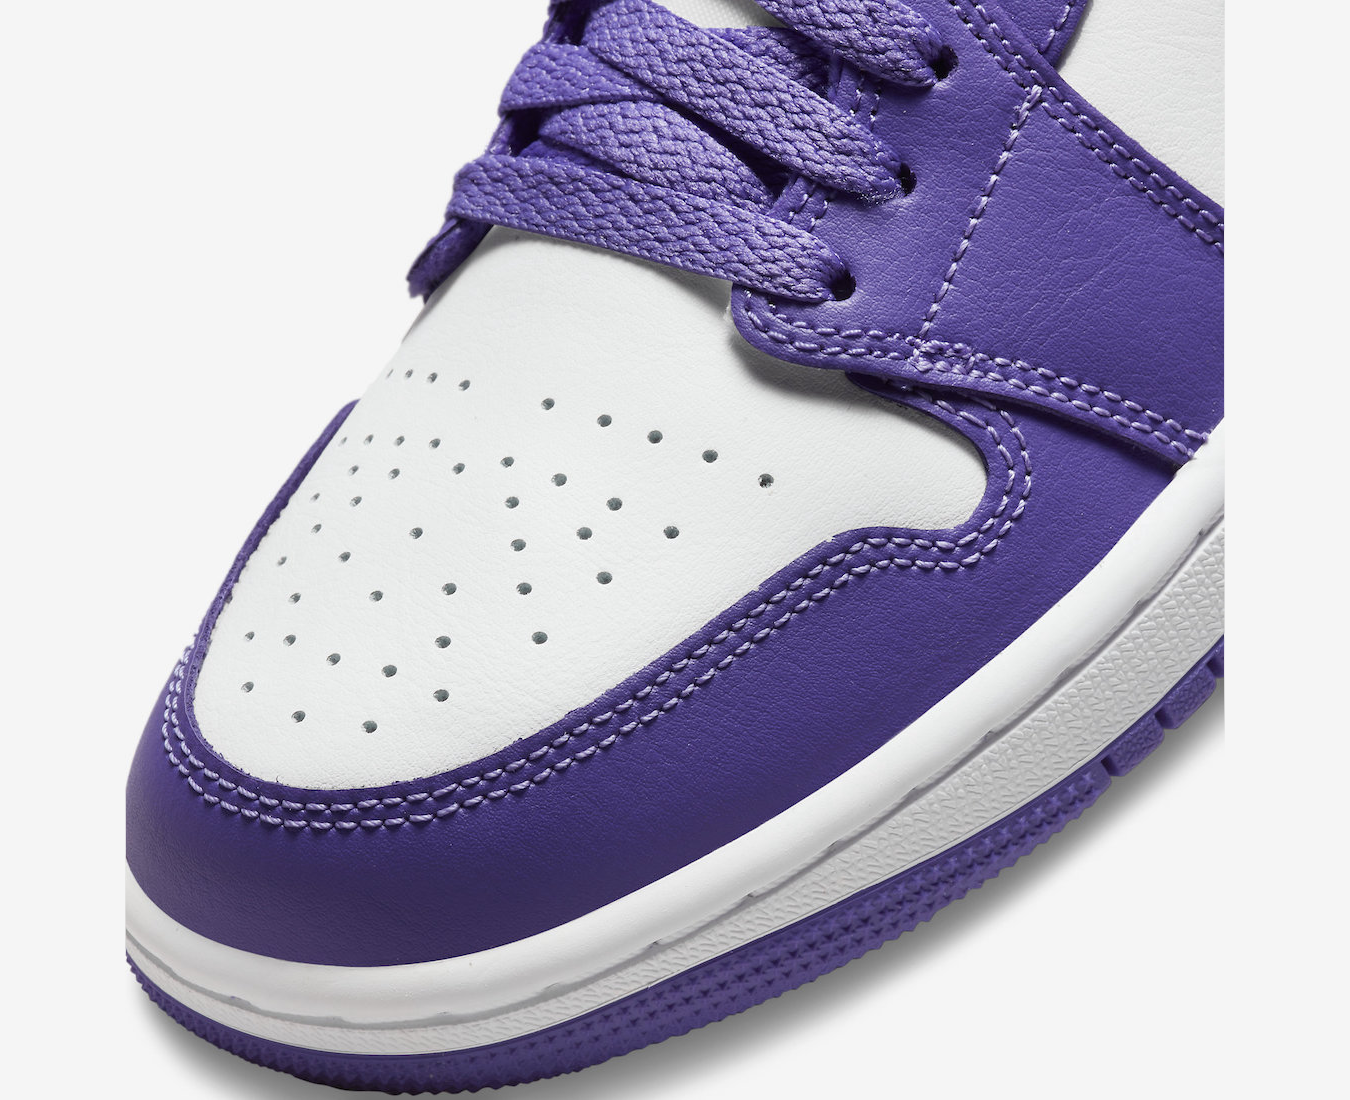 Air Jordan 1 Low 'Psychic Purple'